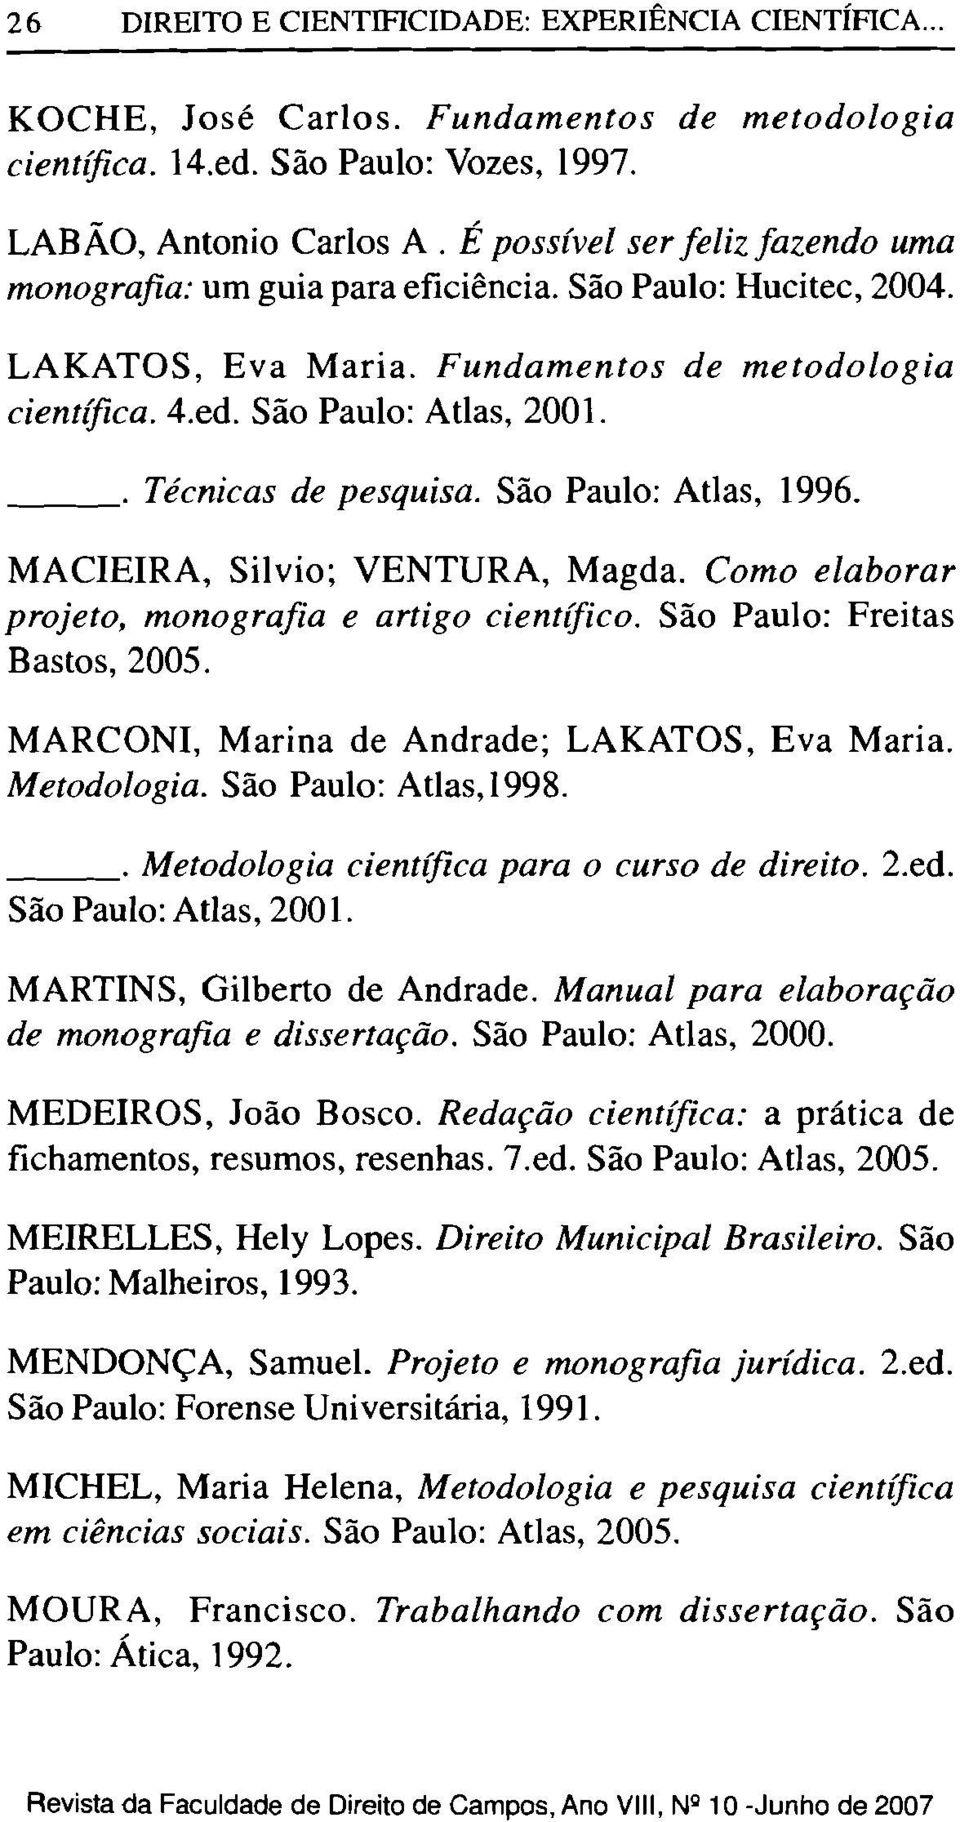 o Técnicas de pesquisa. São Paulo: Atlas, 1996. MACIEIRA, Silvio; VENTURA, Magda. Como elaborar projeto, monografia e artigo científico. São Paulo: Freitas Bastos, 2005.